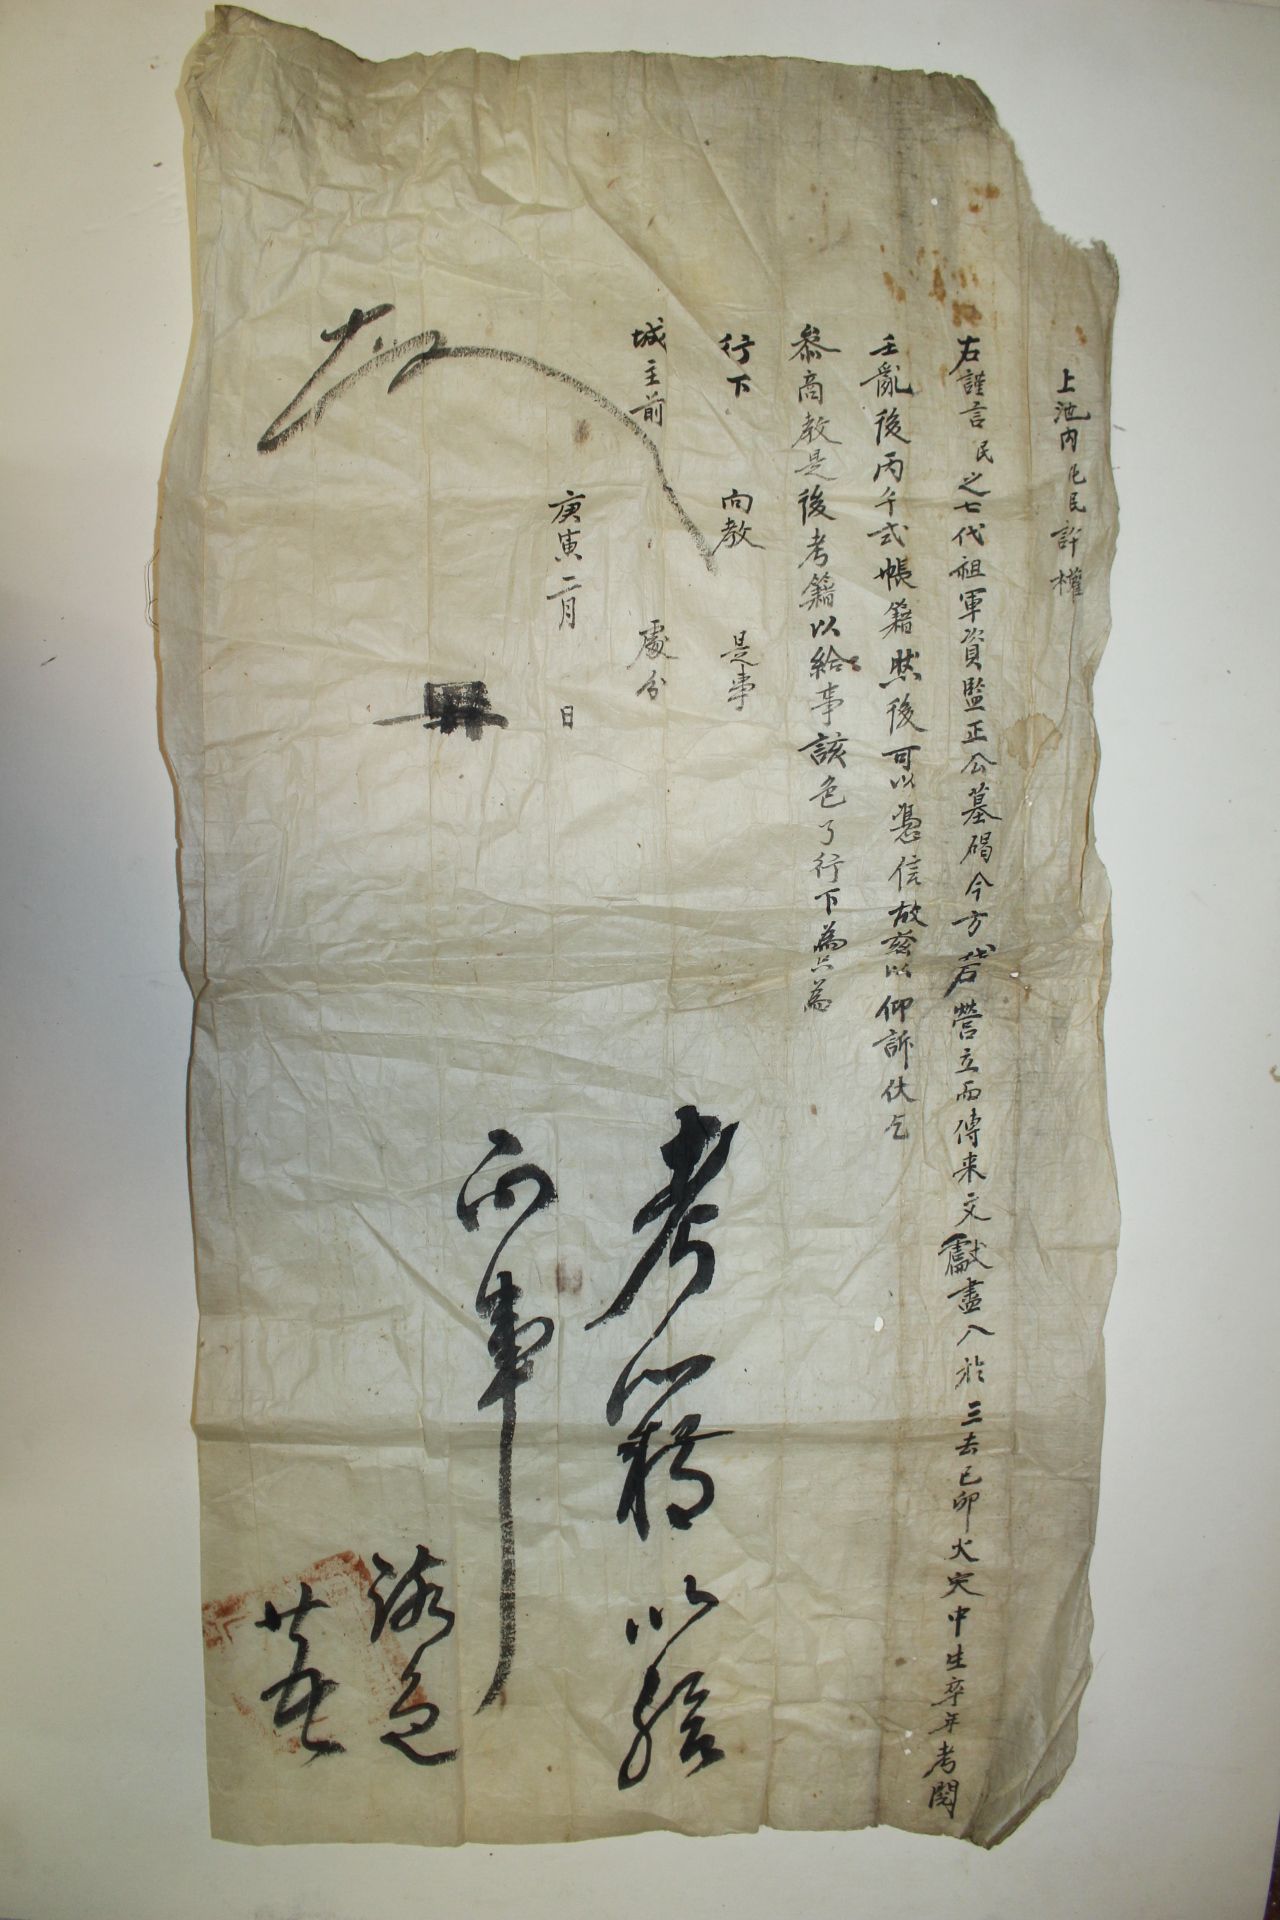 조선시대 허권(許權)의 칠대조는 군자감정을 역임했고 임란후 호구가 잘못되었다는 상소문